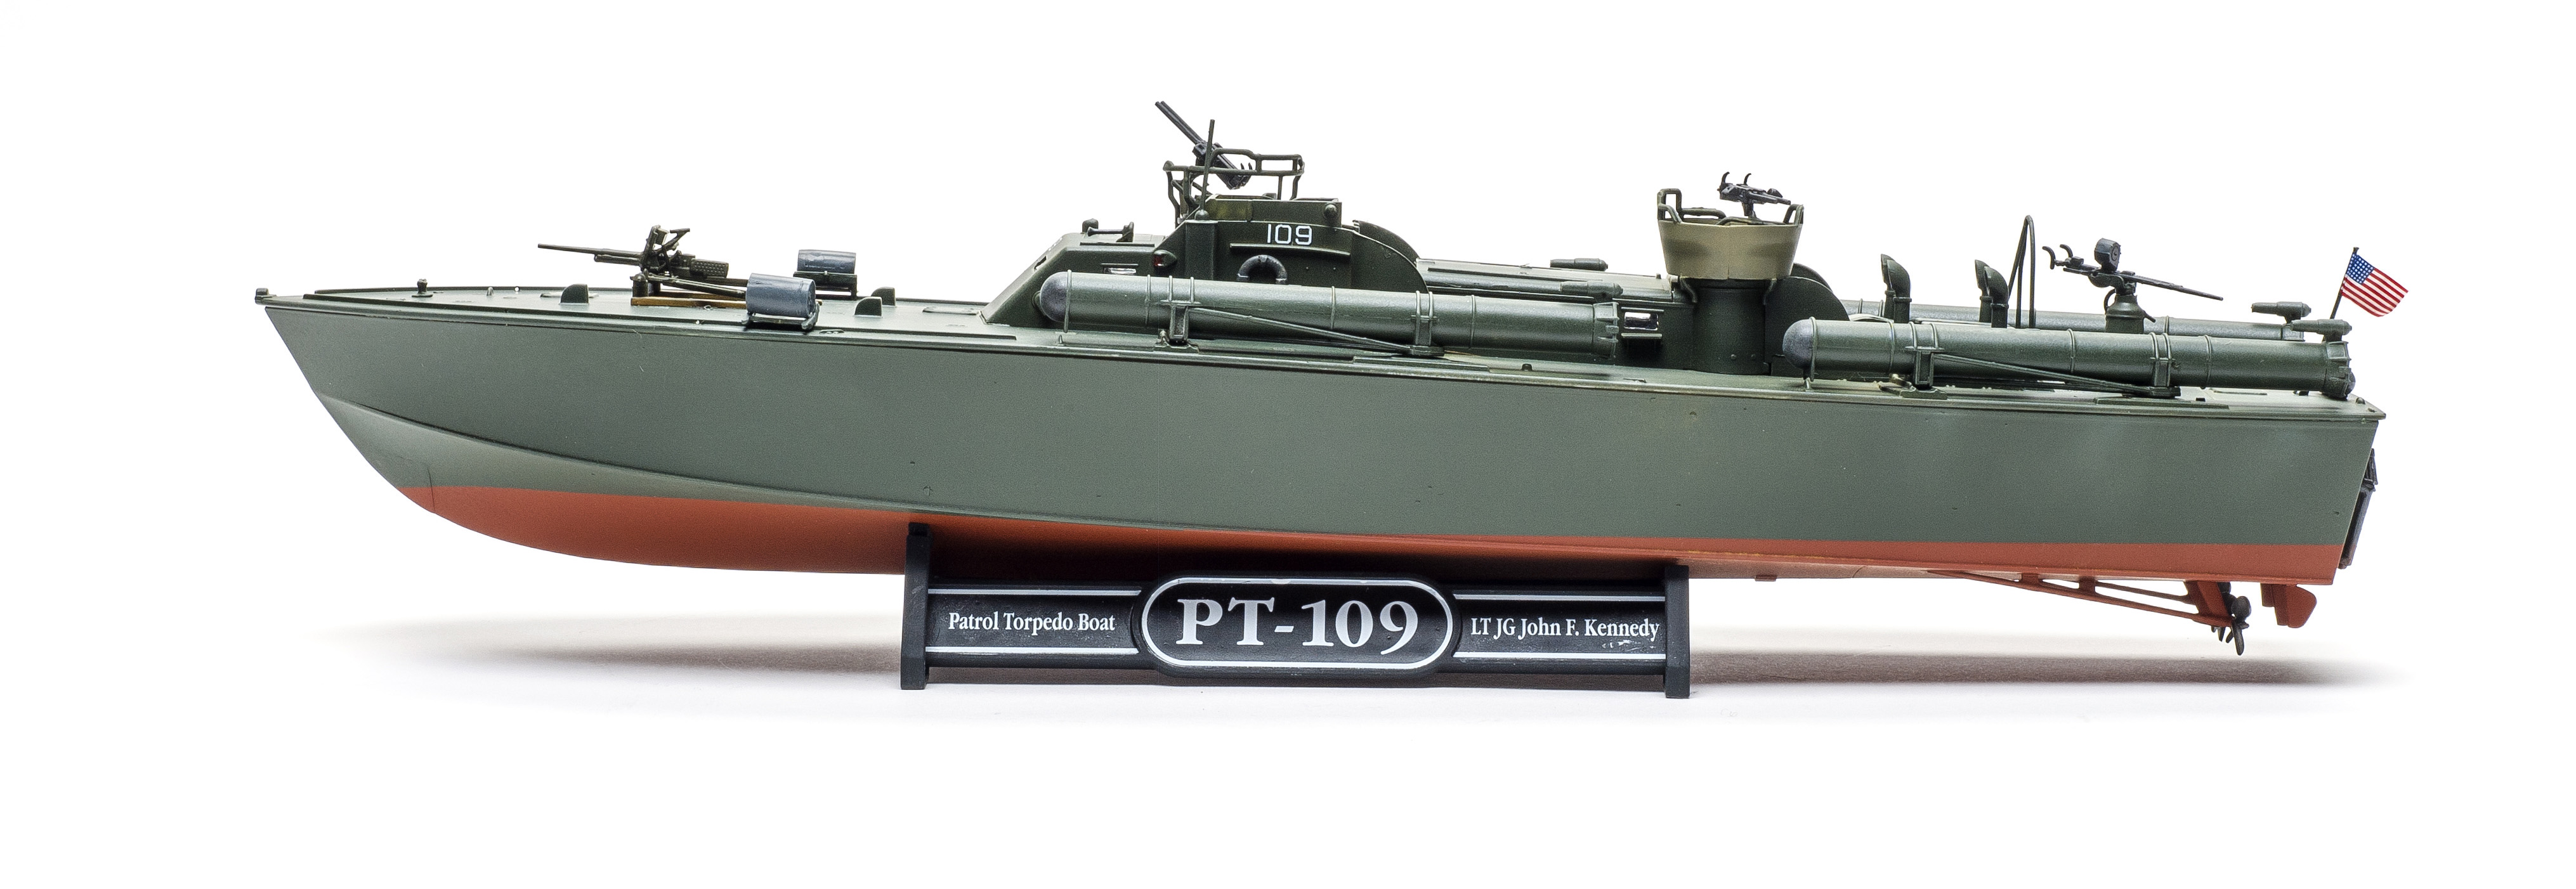 Revell 05147 1/72 Patrol Torpedo Boat PT-109 